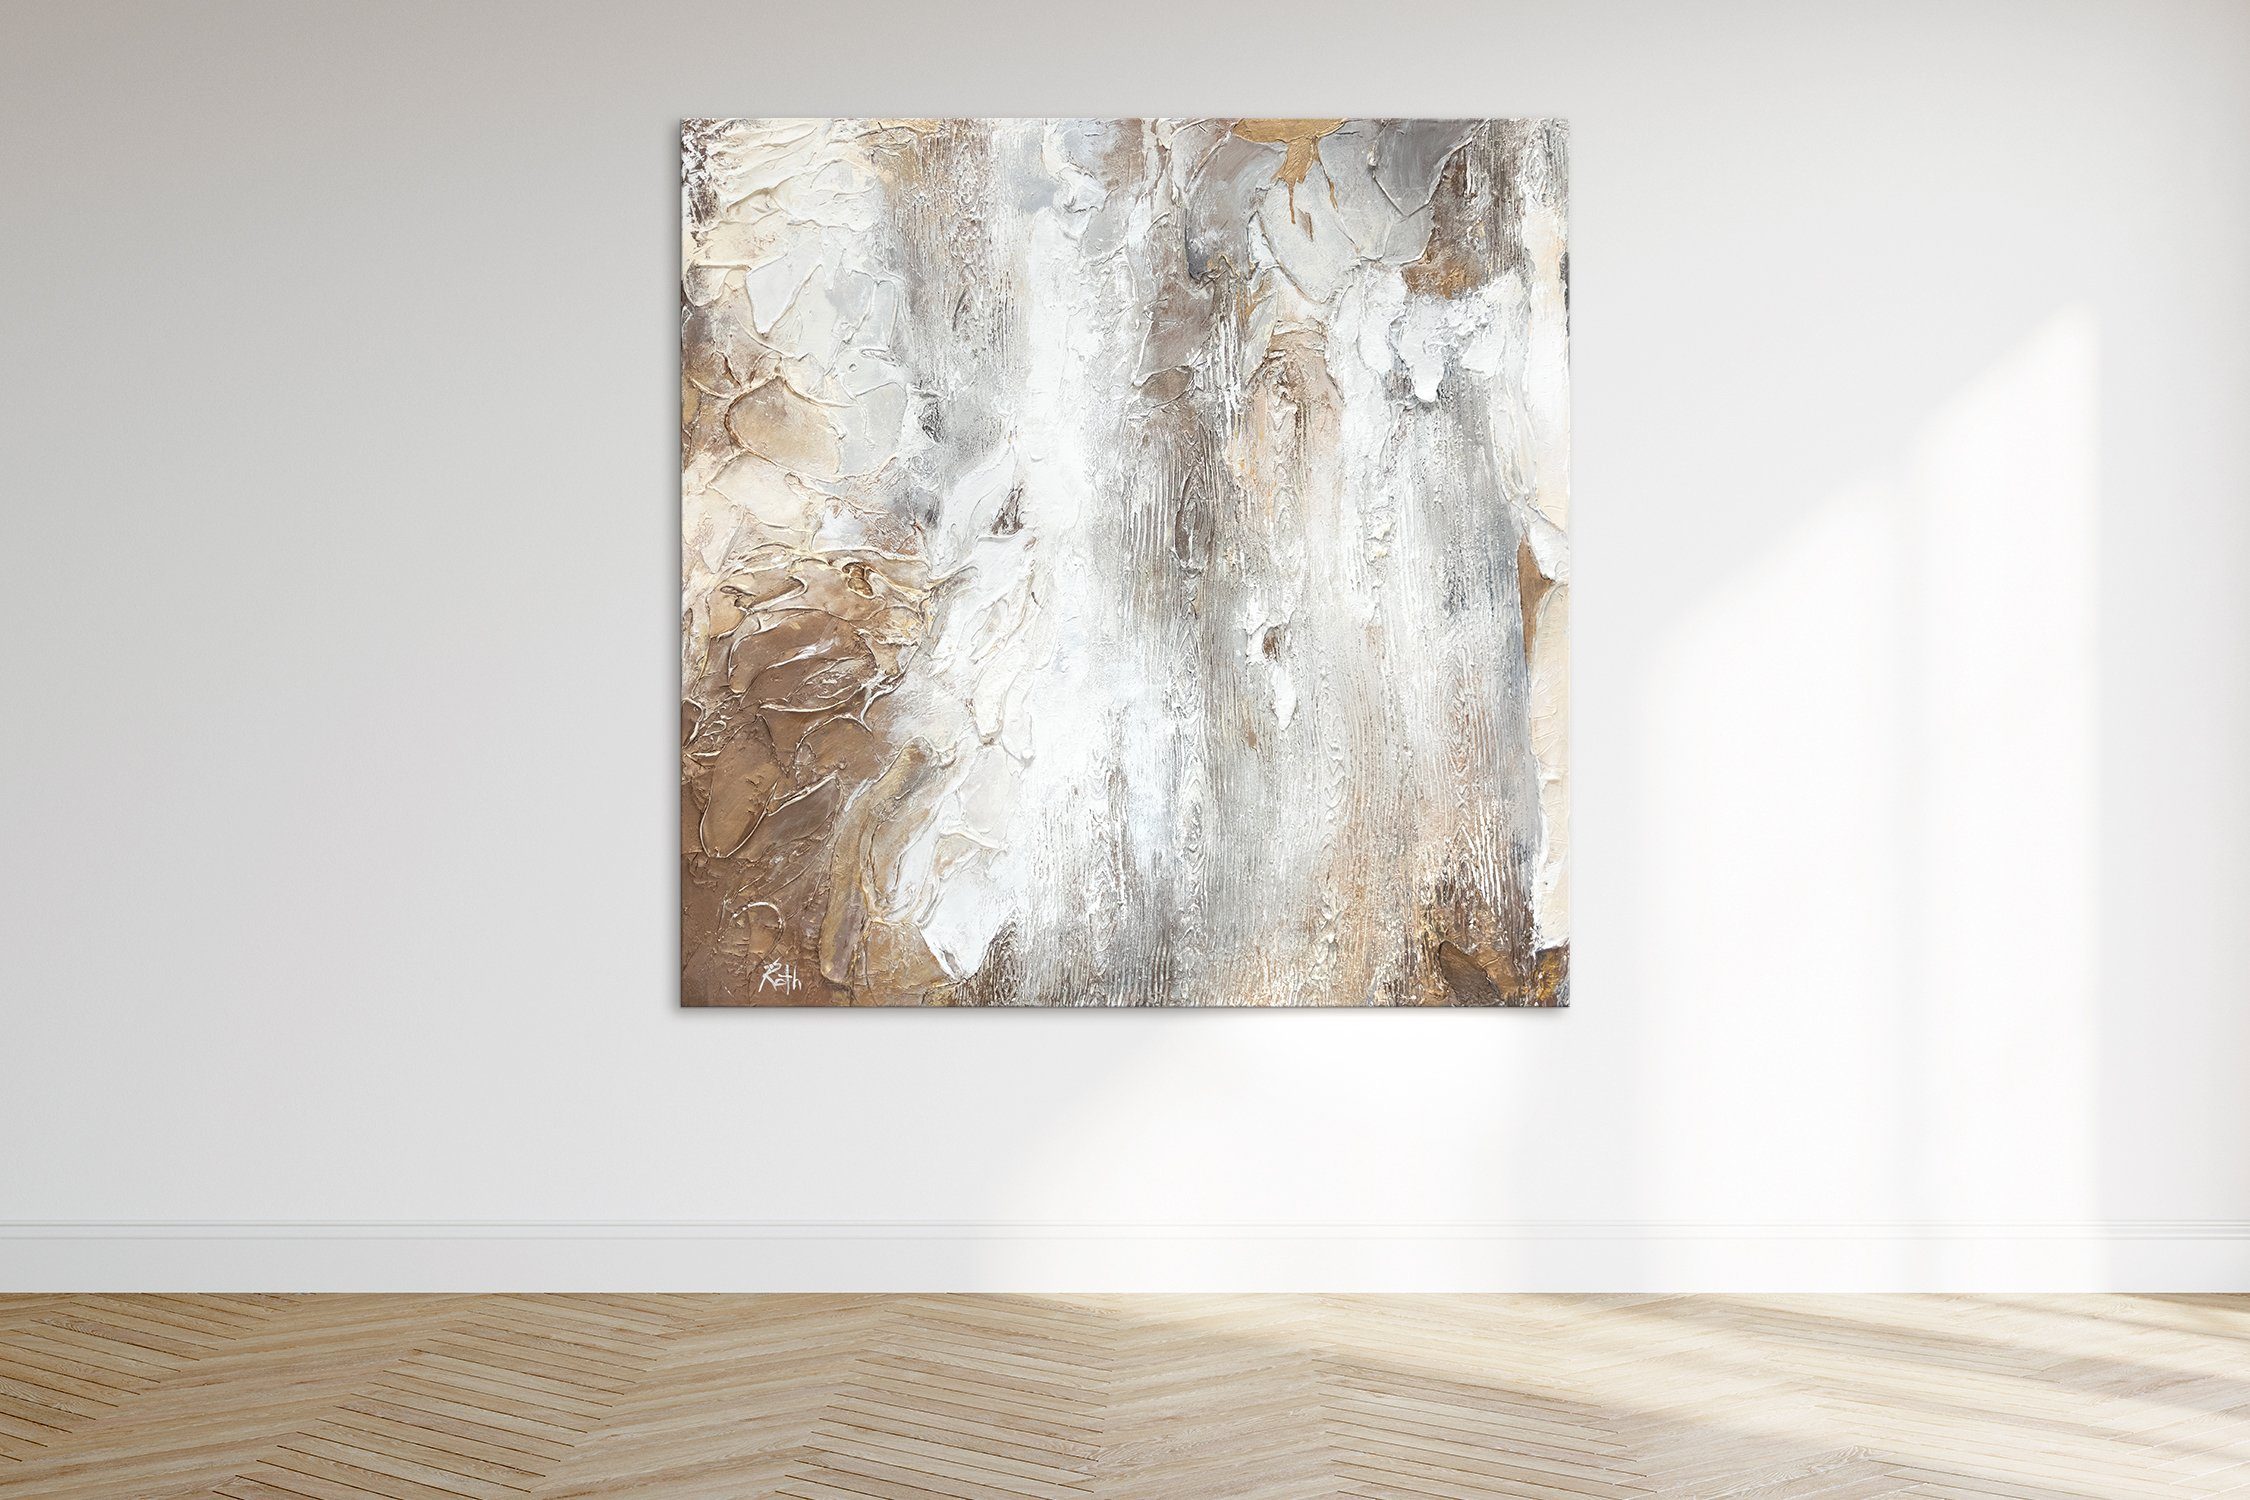 Gemälde Weisheit, Abstraktes Kupfer auf Abstraktion, Leinwand Handgemalt Quadratisches YS-Art Bild